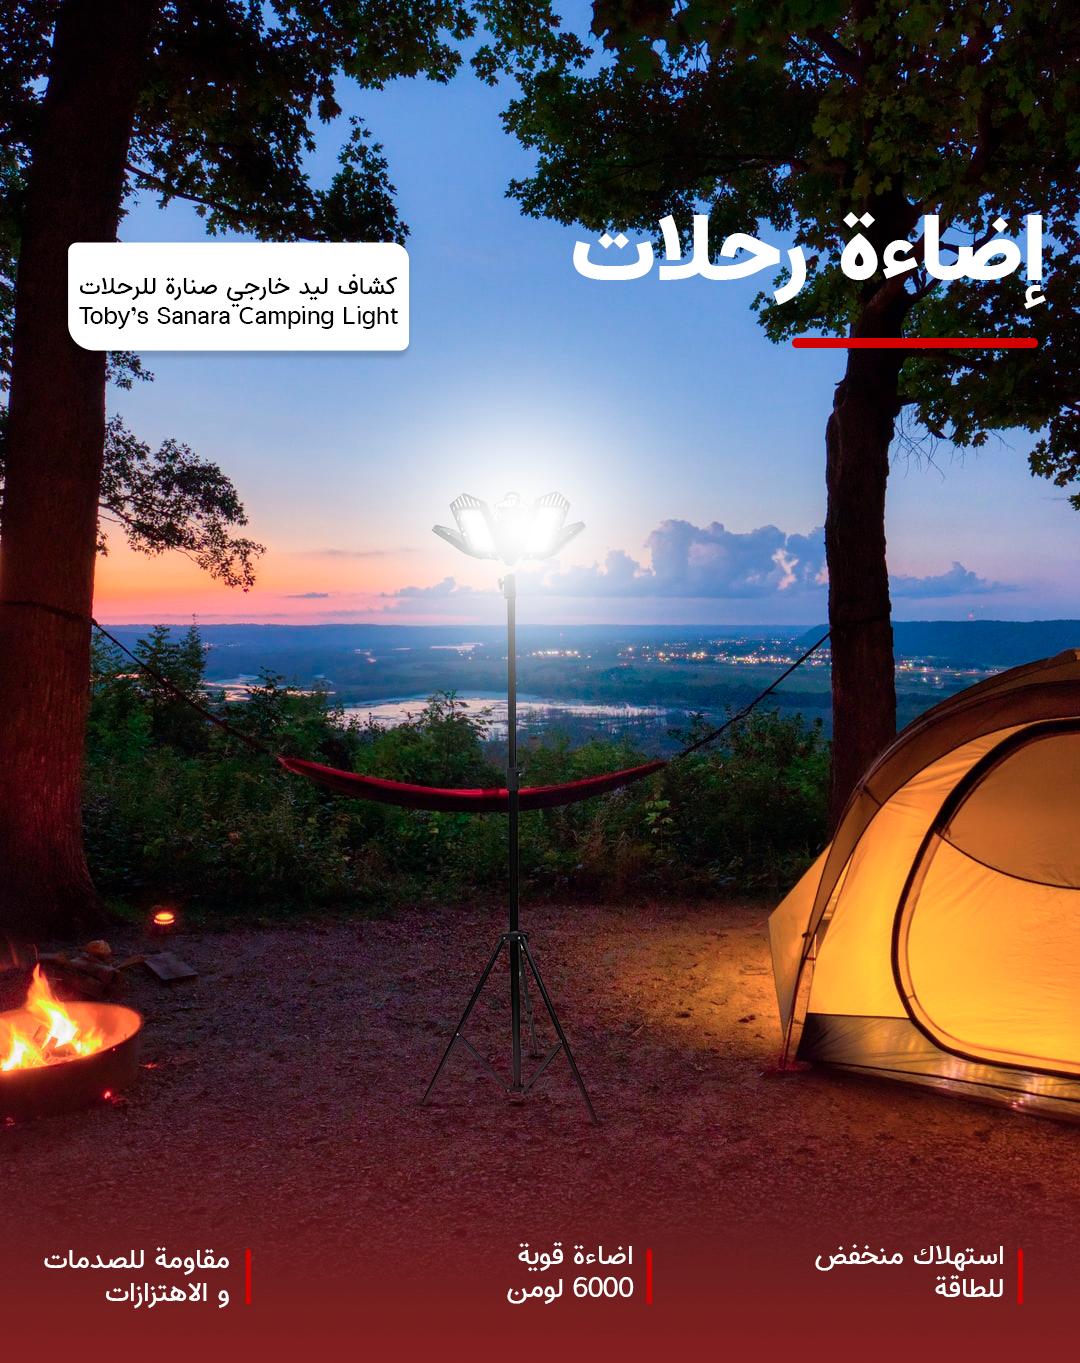 كشاف ليد خارجي صنارة للرحلات 6000 لومن Toby’s Sanara Camping Light With 5 Led Light Set